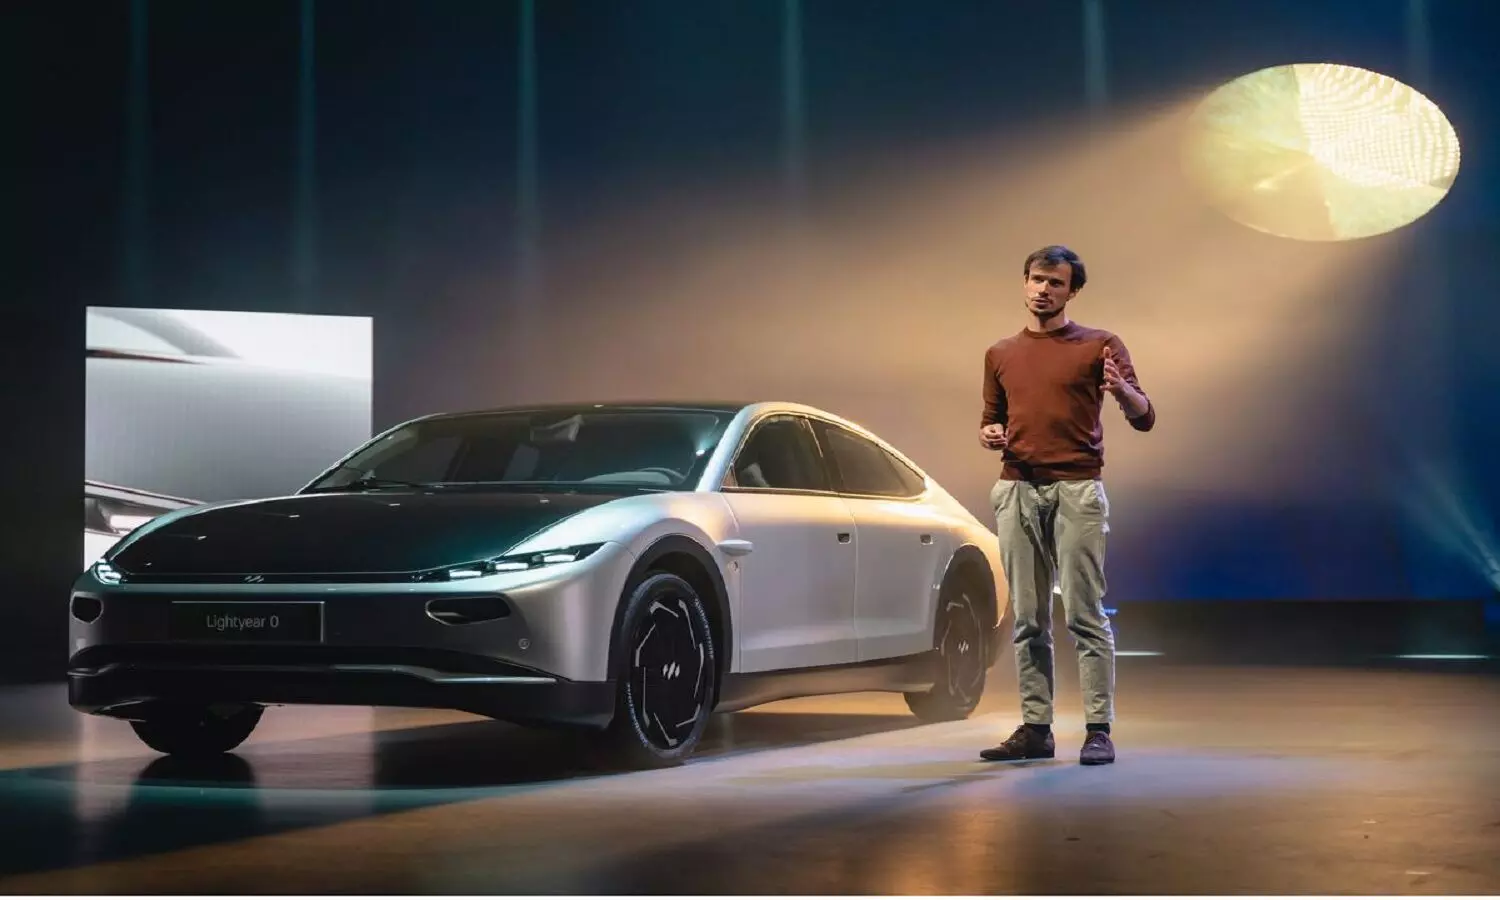 Lightyear 0 Electric Car: एक बार चार्ज करने पर 7 महीने तक चलेगी इलेक्ट्रिक कार